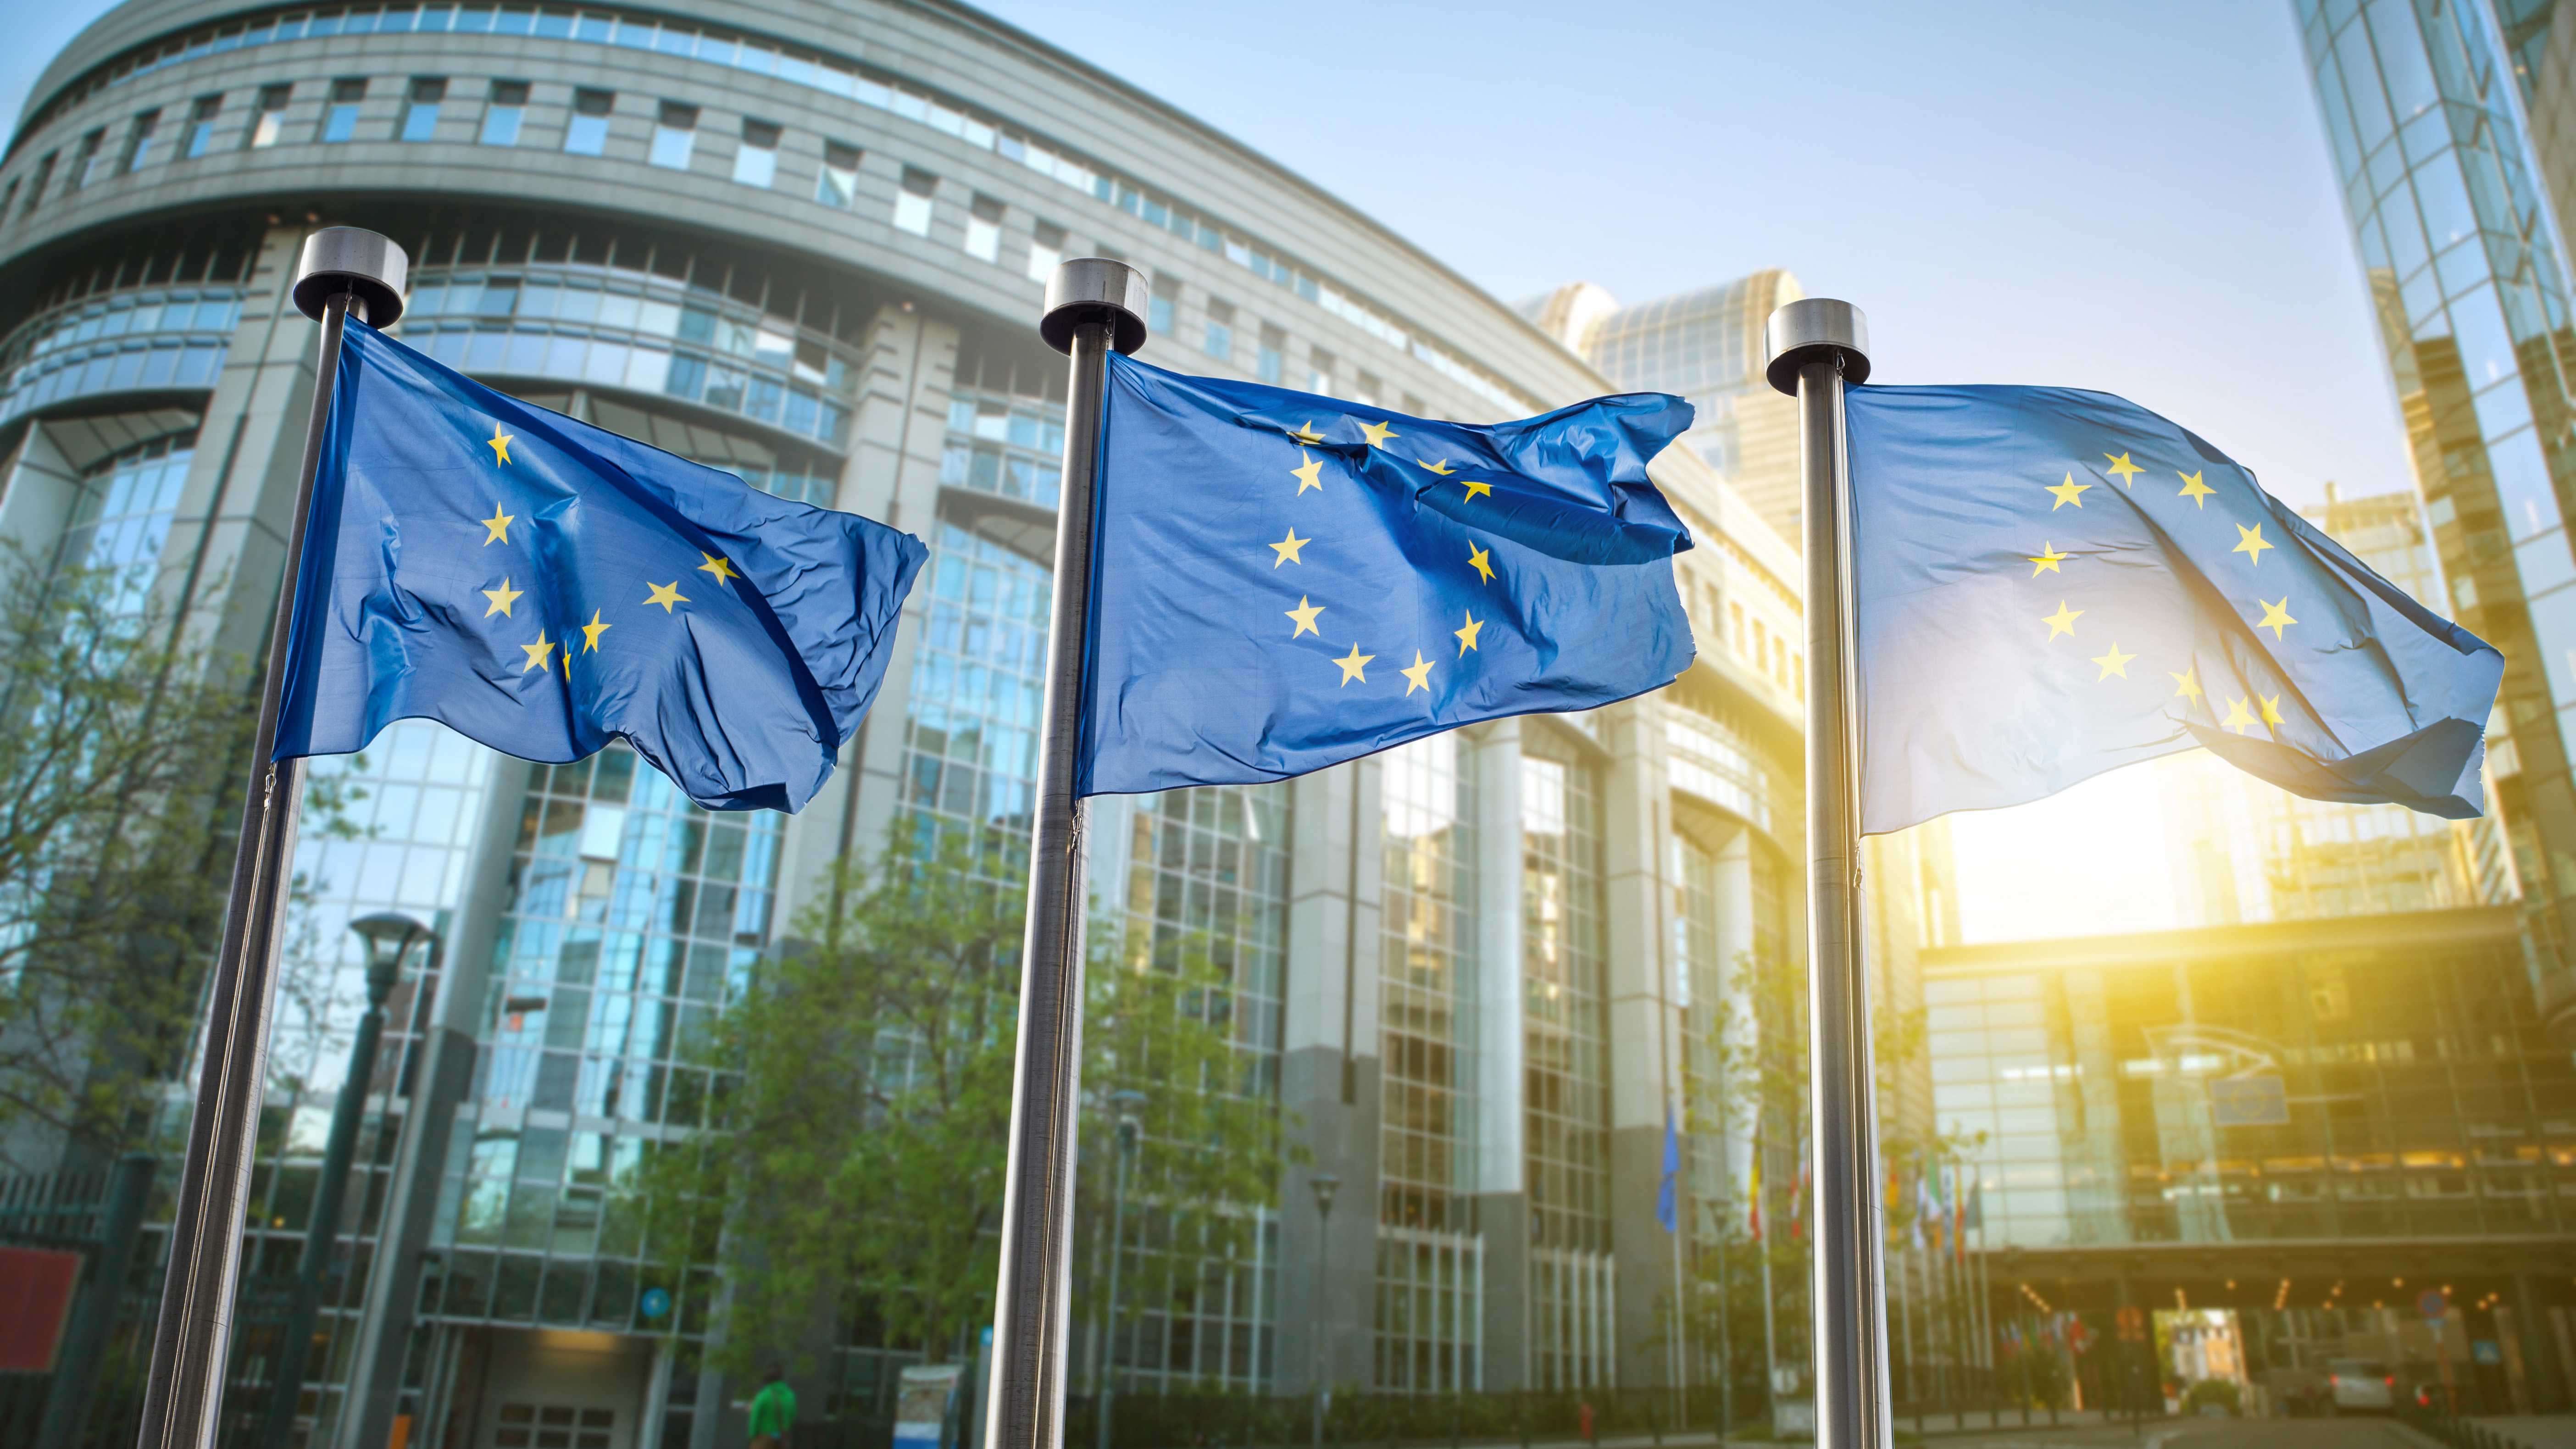 Drapeaux de l'Union européenne à l'extérieur d'un immeuble de bureaux en Europe